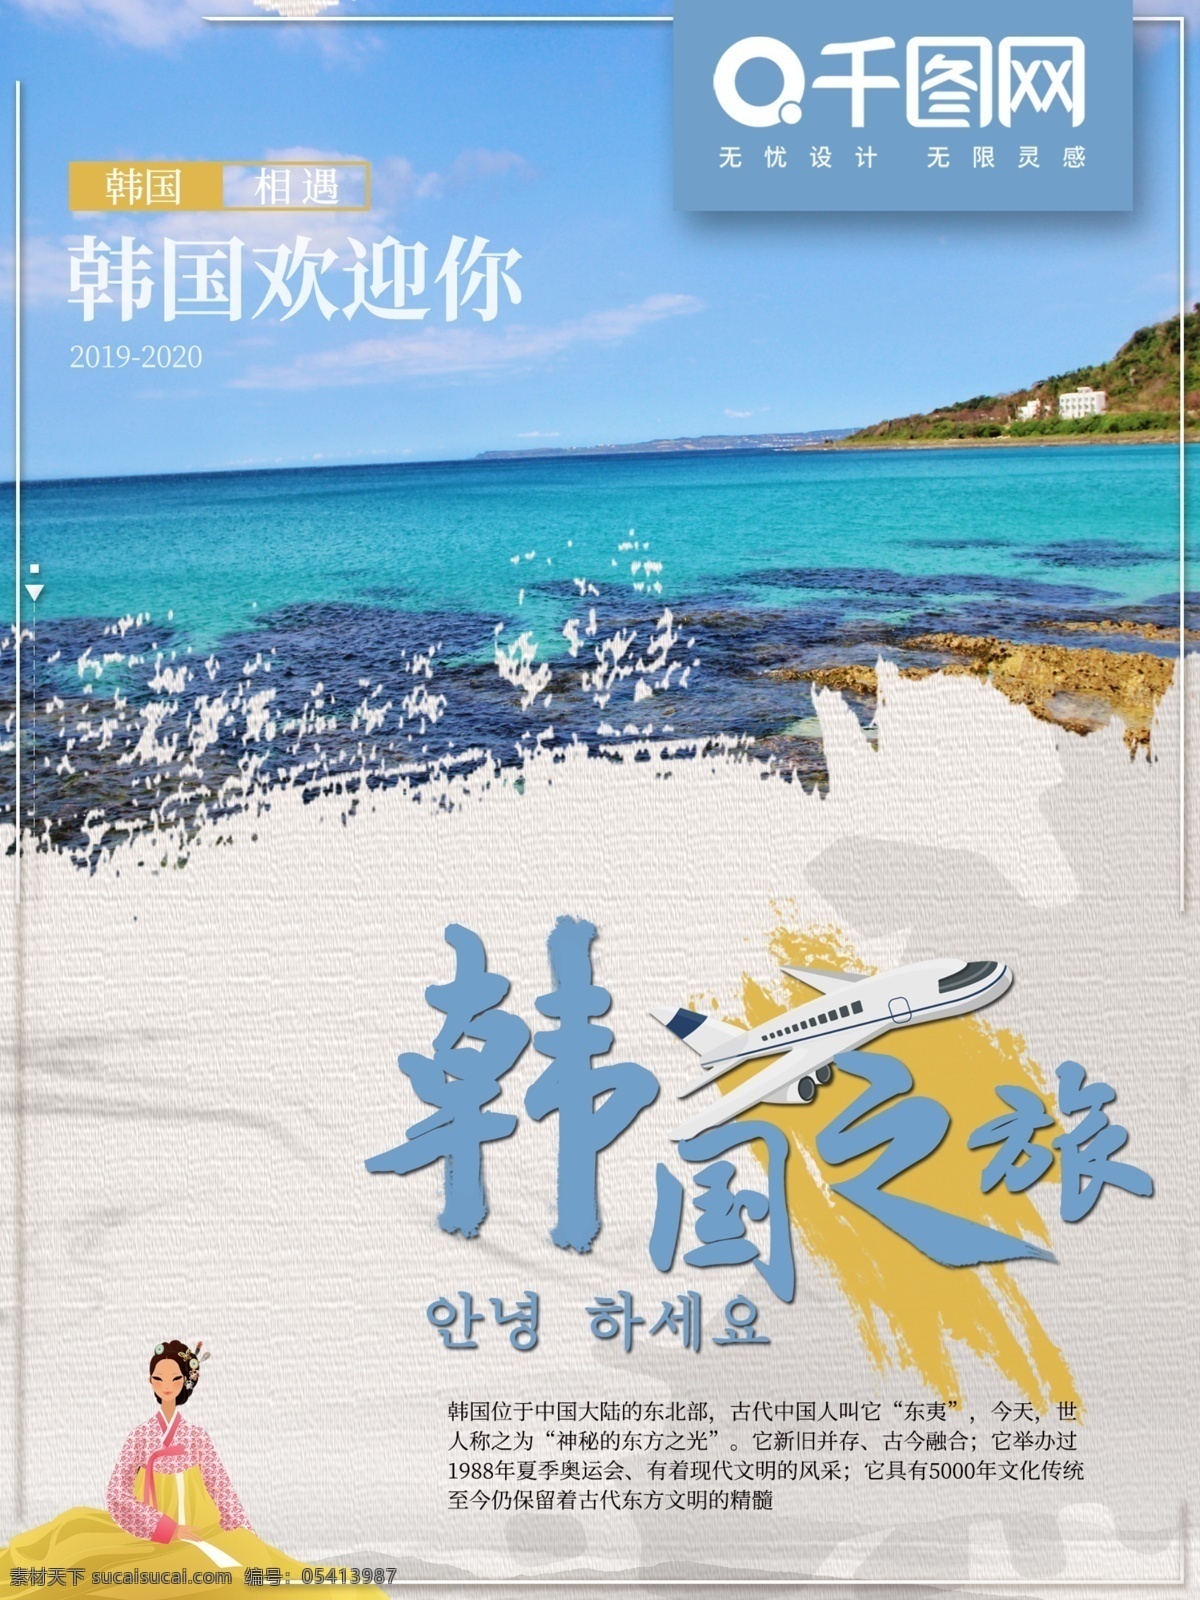 出国 韩国 旅行 旅游 商业 海报 简约 旅行公司使用 旅游团使用 旅游公司使用 小清新 出国游玩 游玩